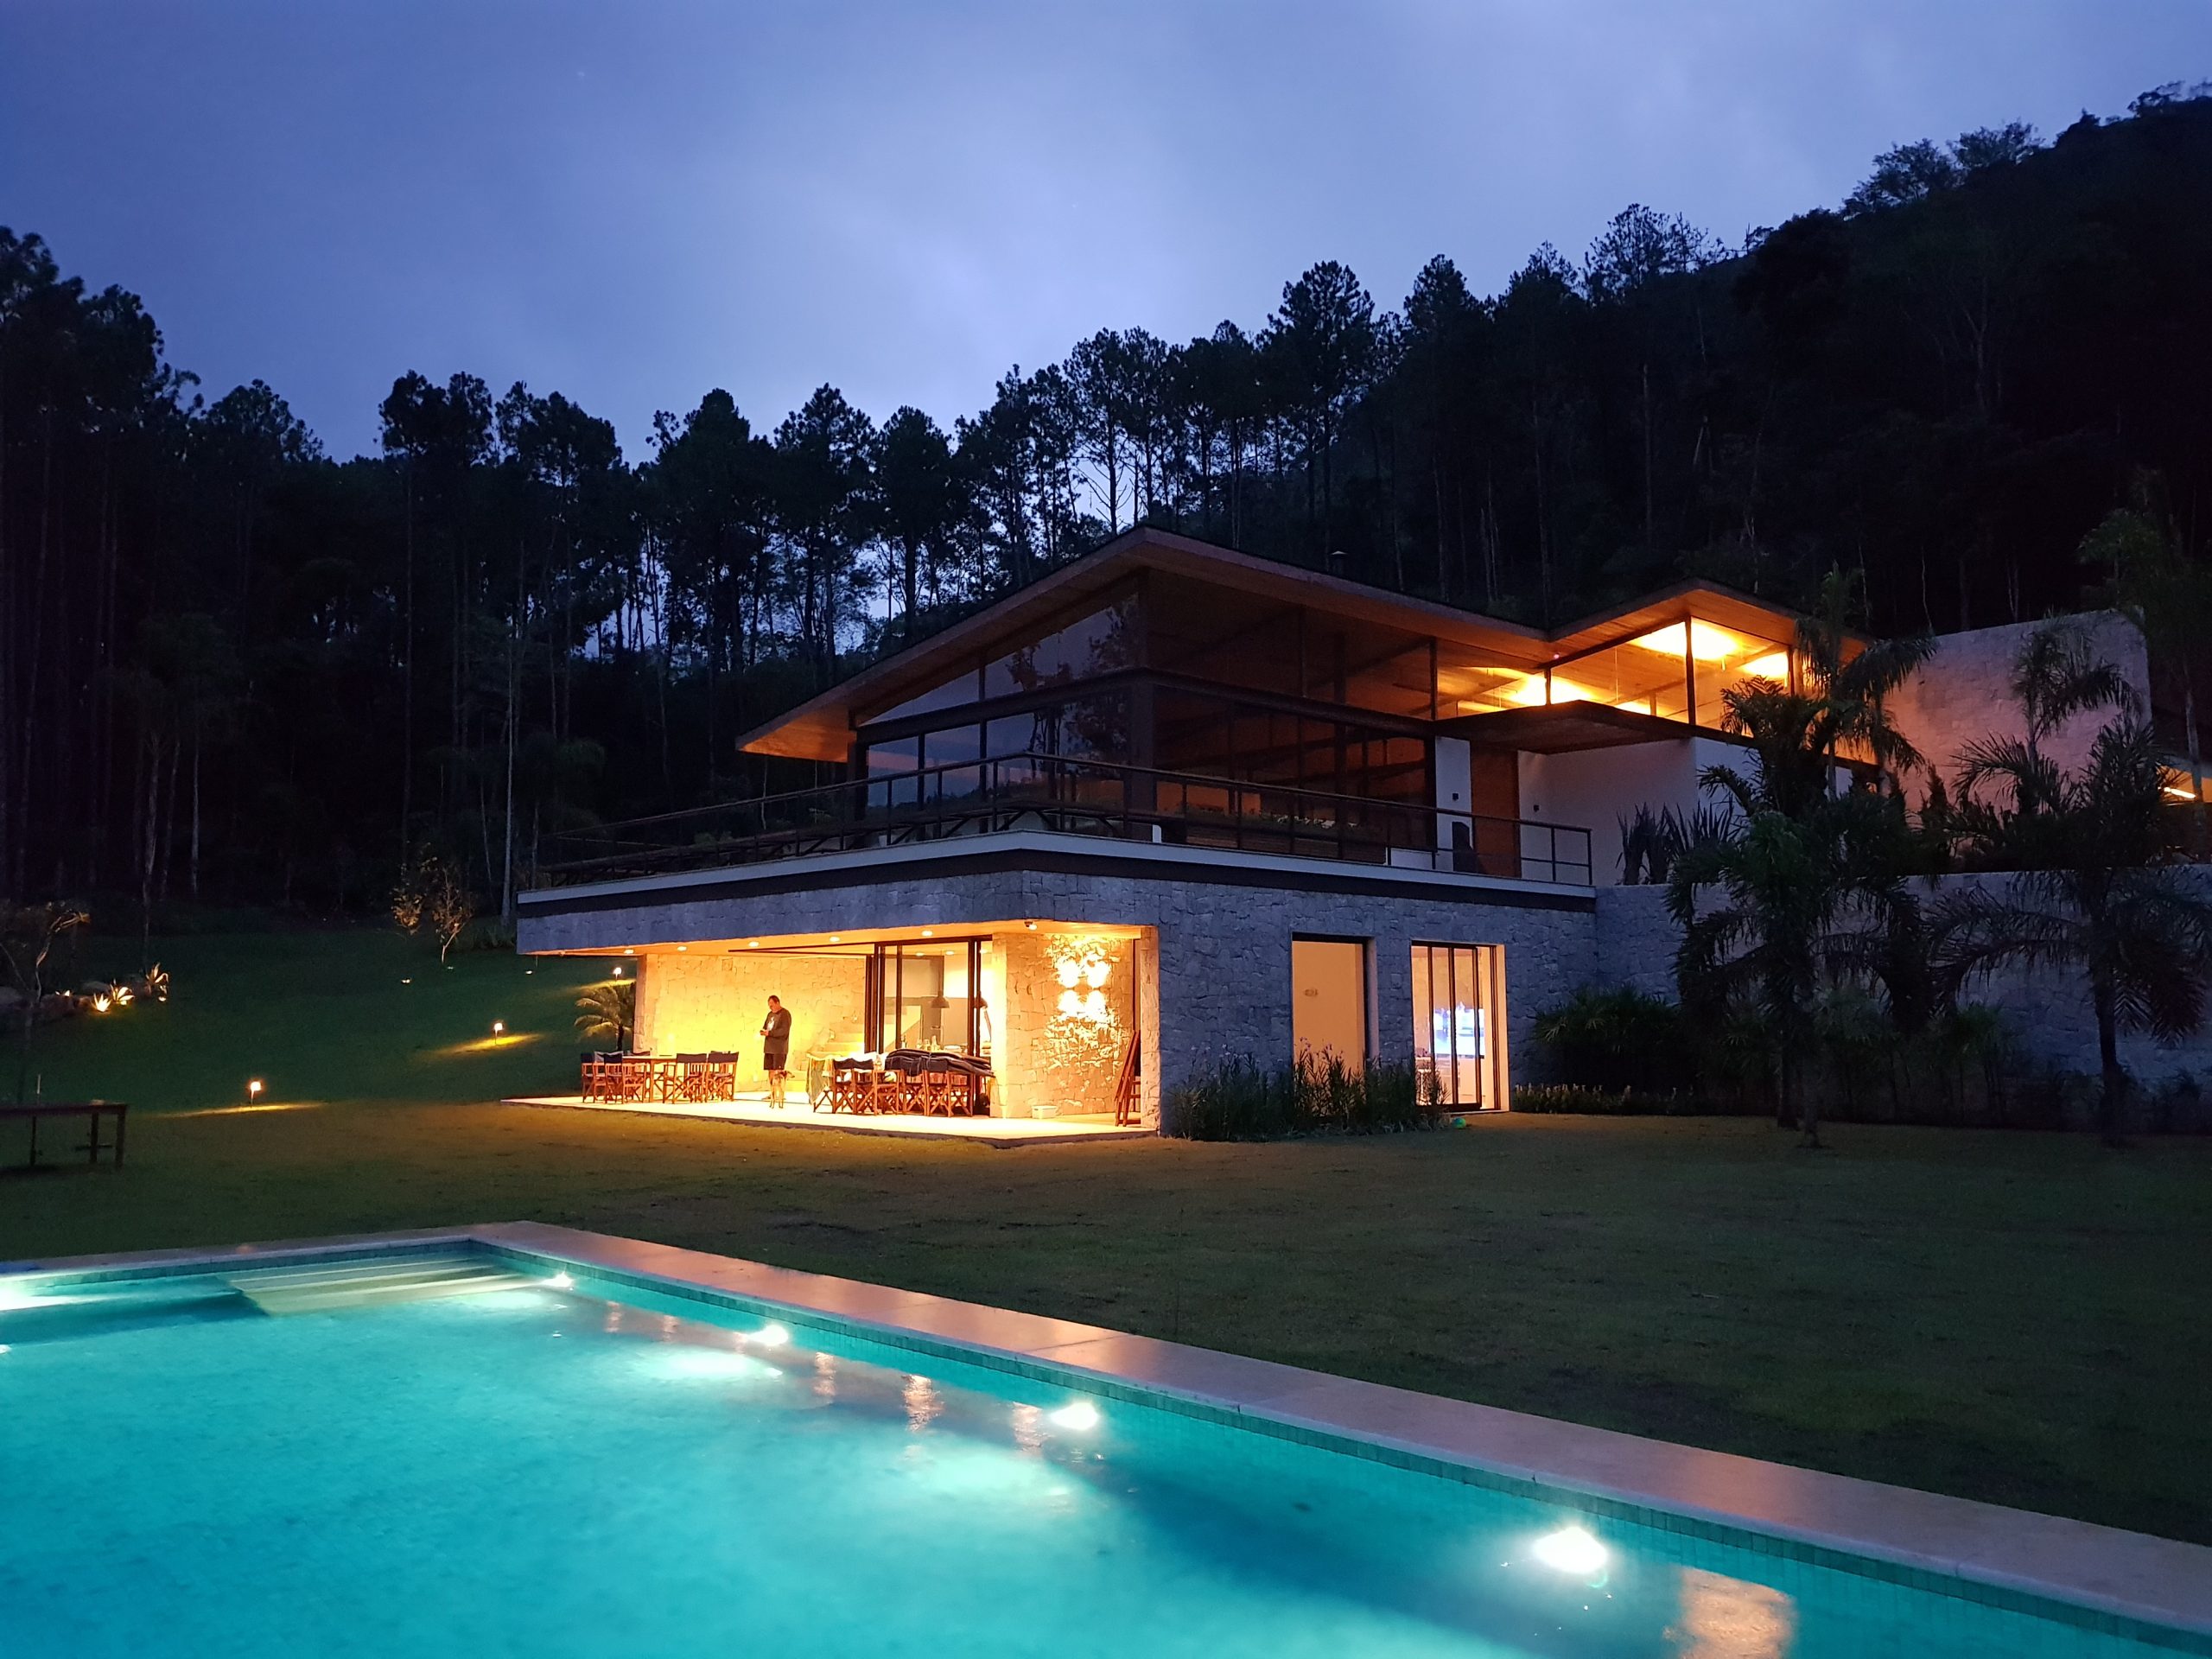 casa duplex com piscina ao ar livre de noite